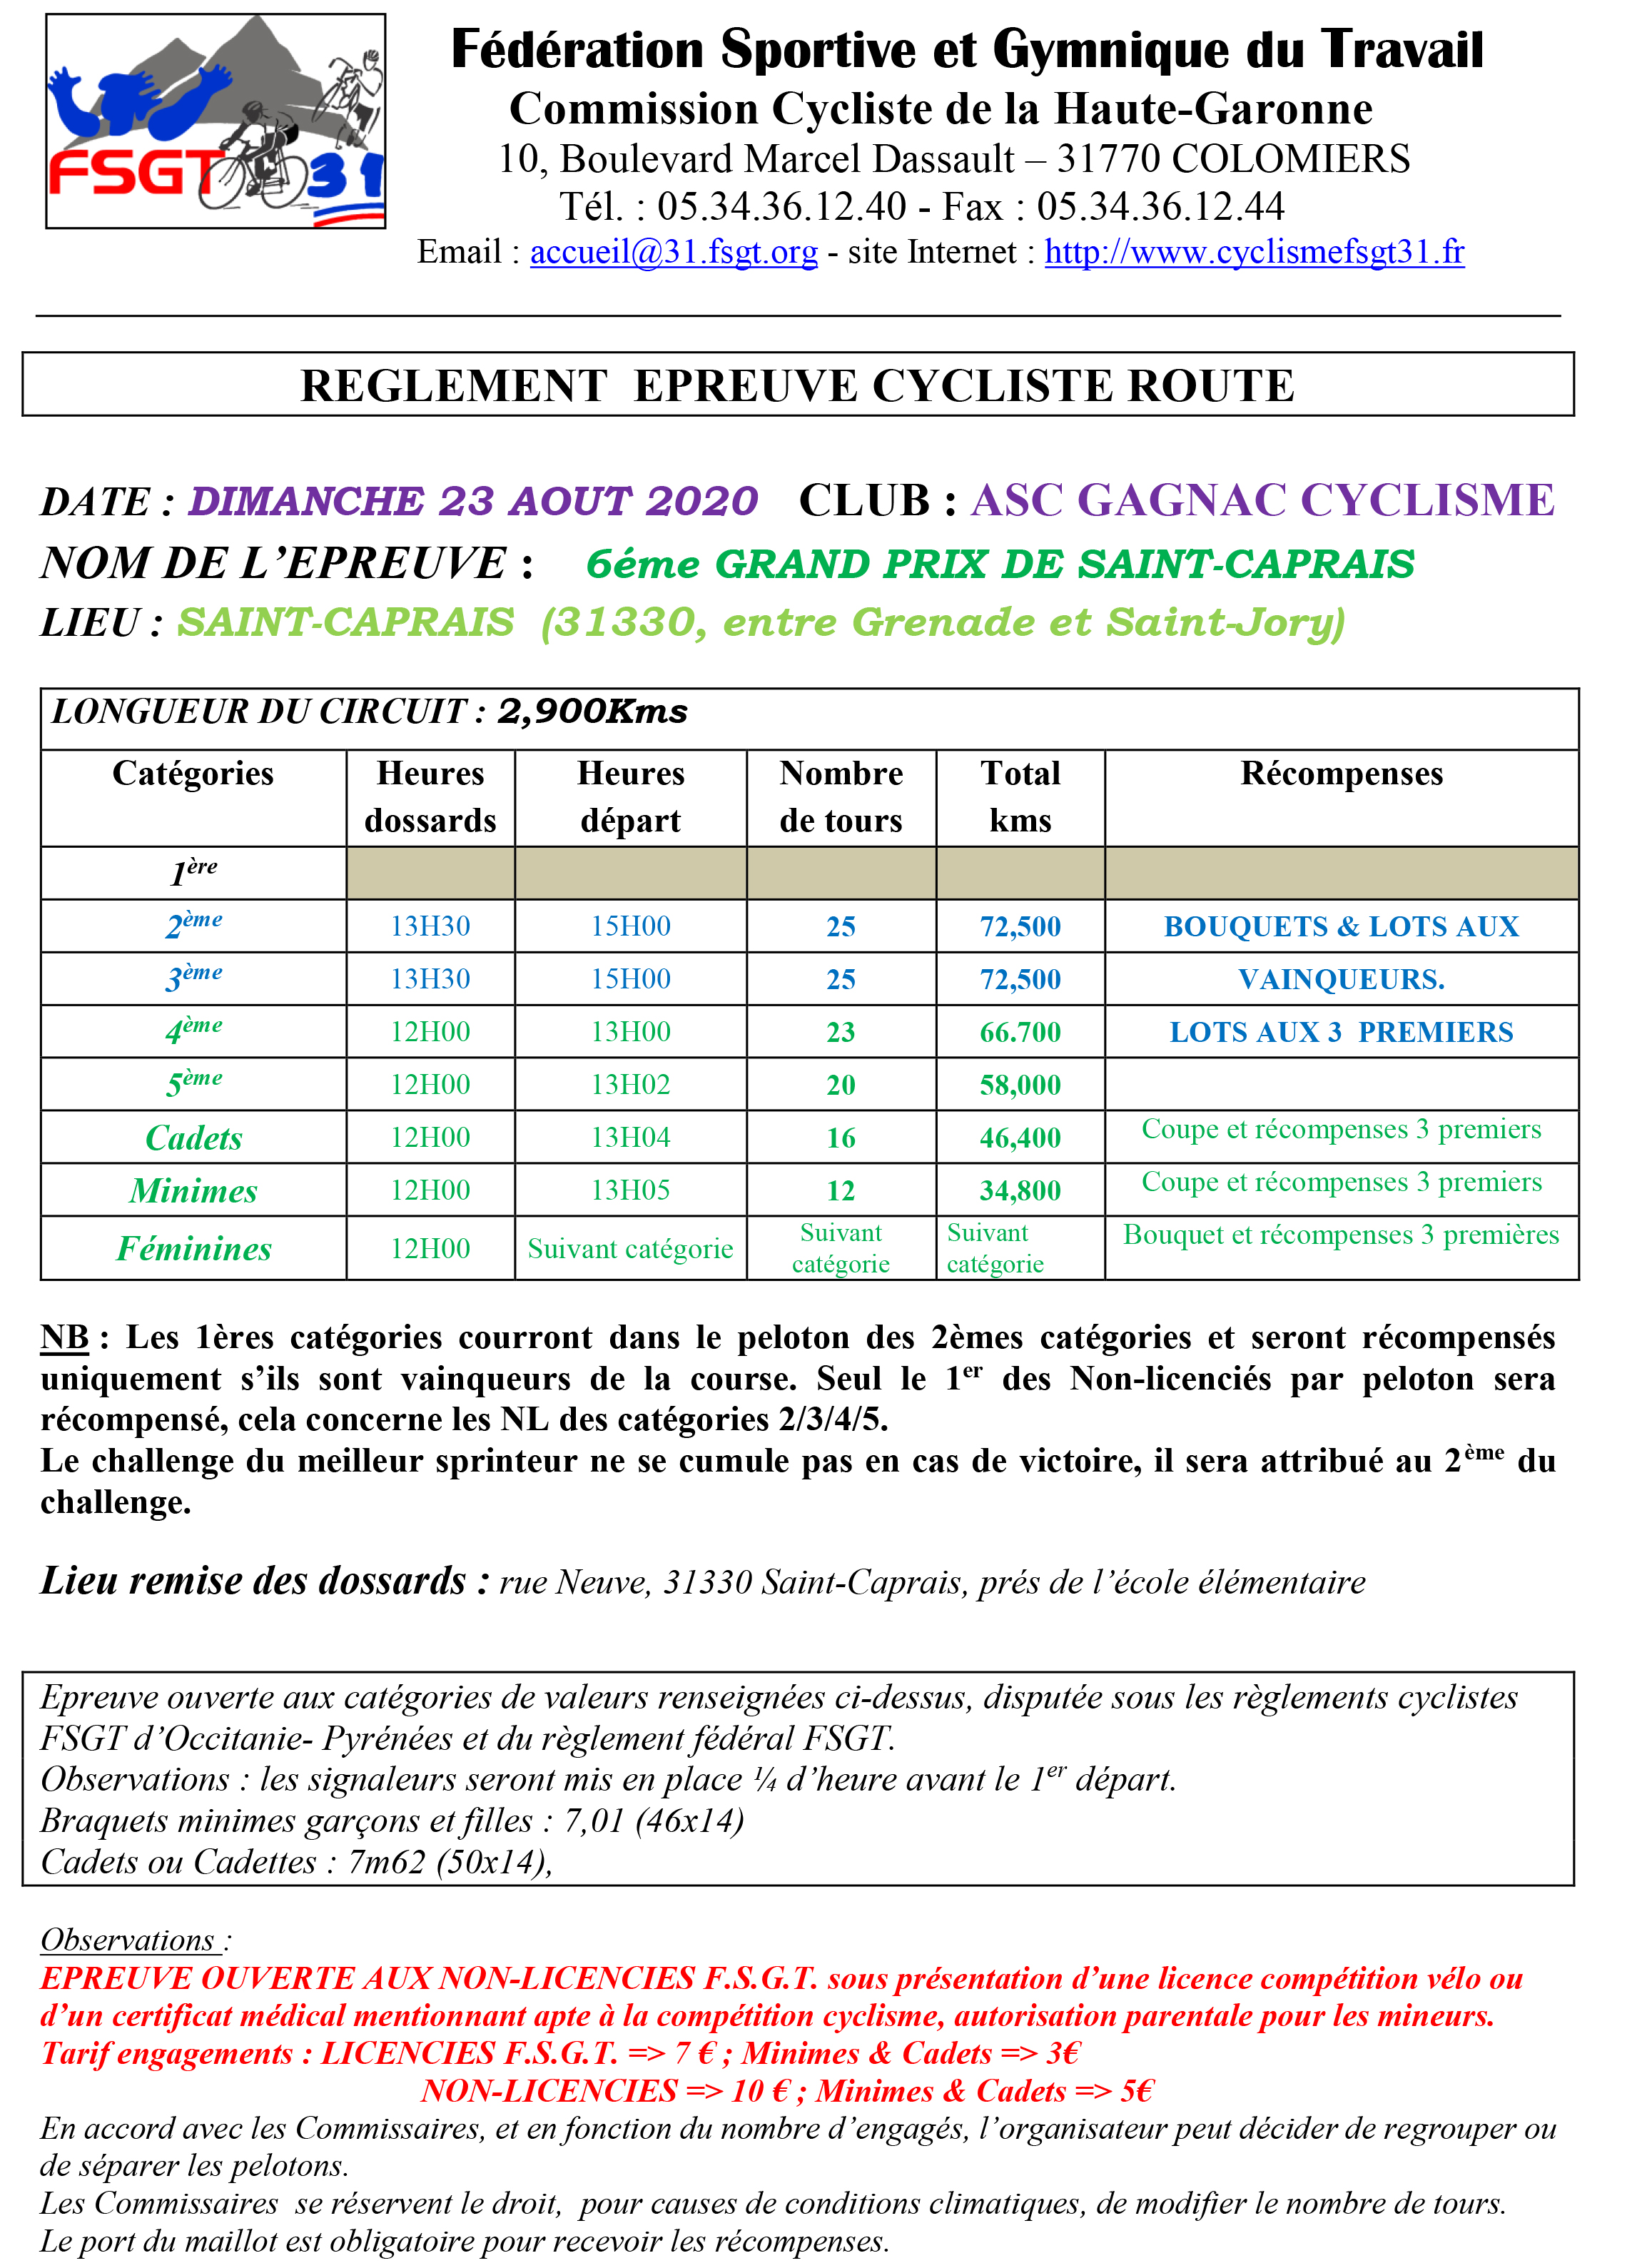 Fiche Epreuve Route St CAPRAIS 23 08 2020